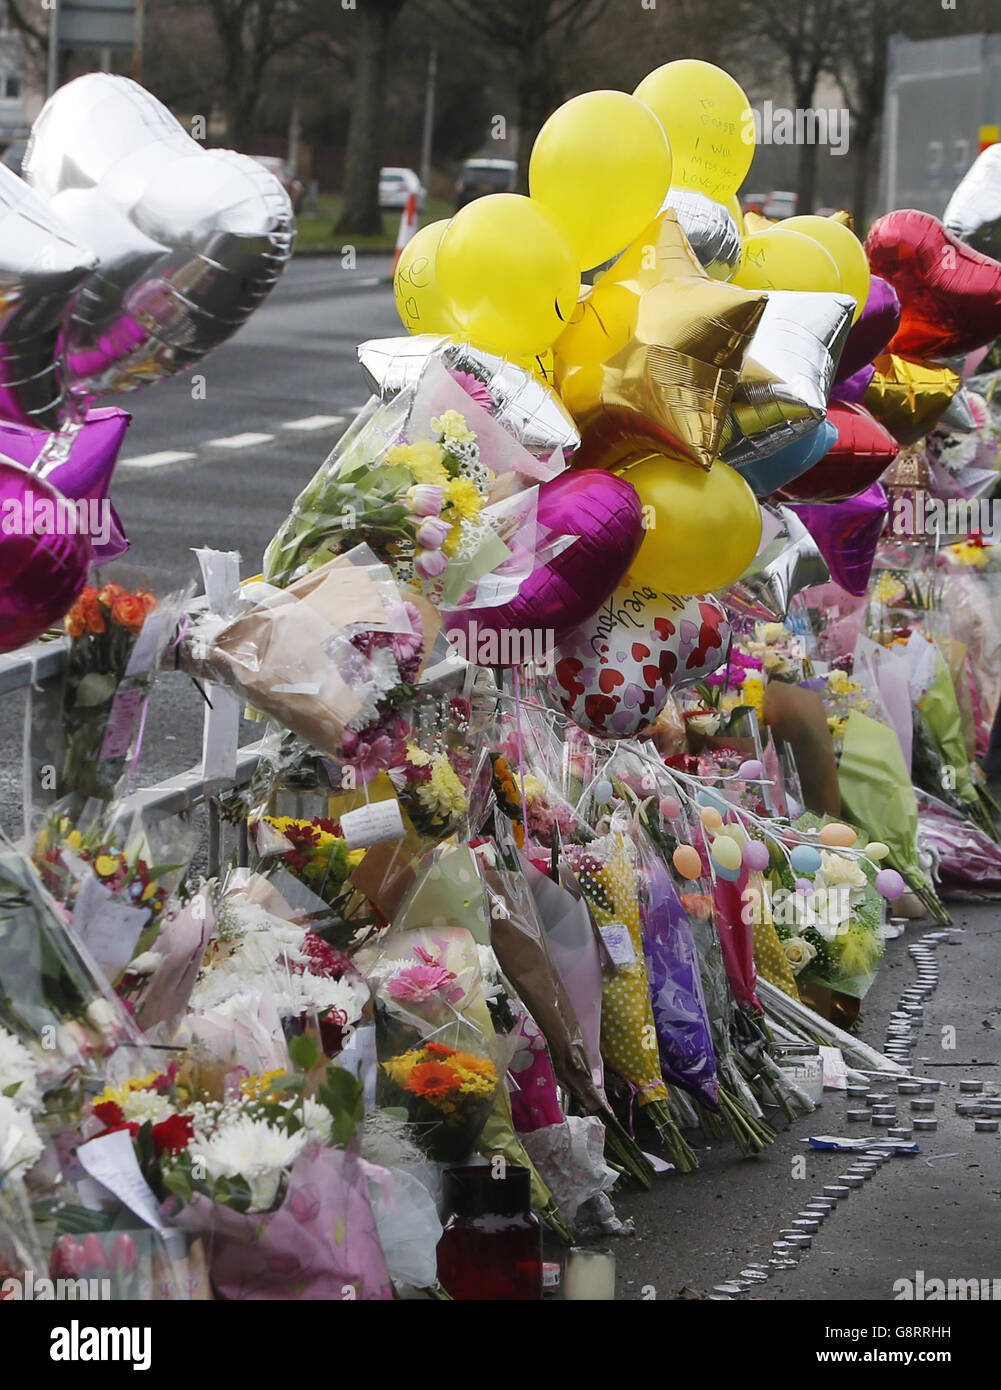 Hommages floraux laissés sur la Great Western Road à Clydebank, dans le West Dunbartonshire, près de l'endroit où le corps de l'adolescent assassiné Paige Doherty a été trouvé. Banque D'Images